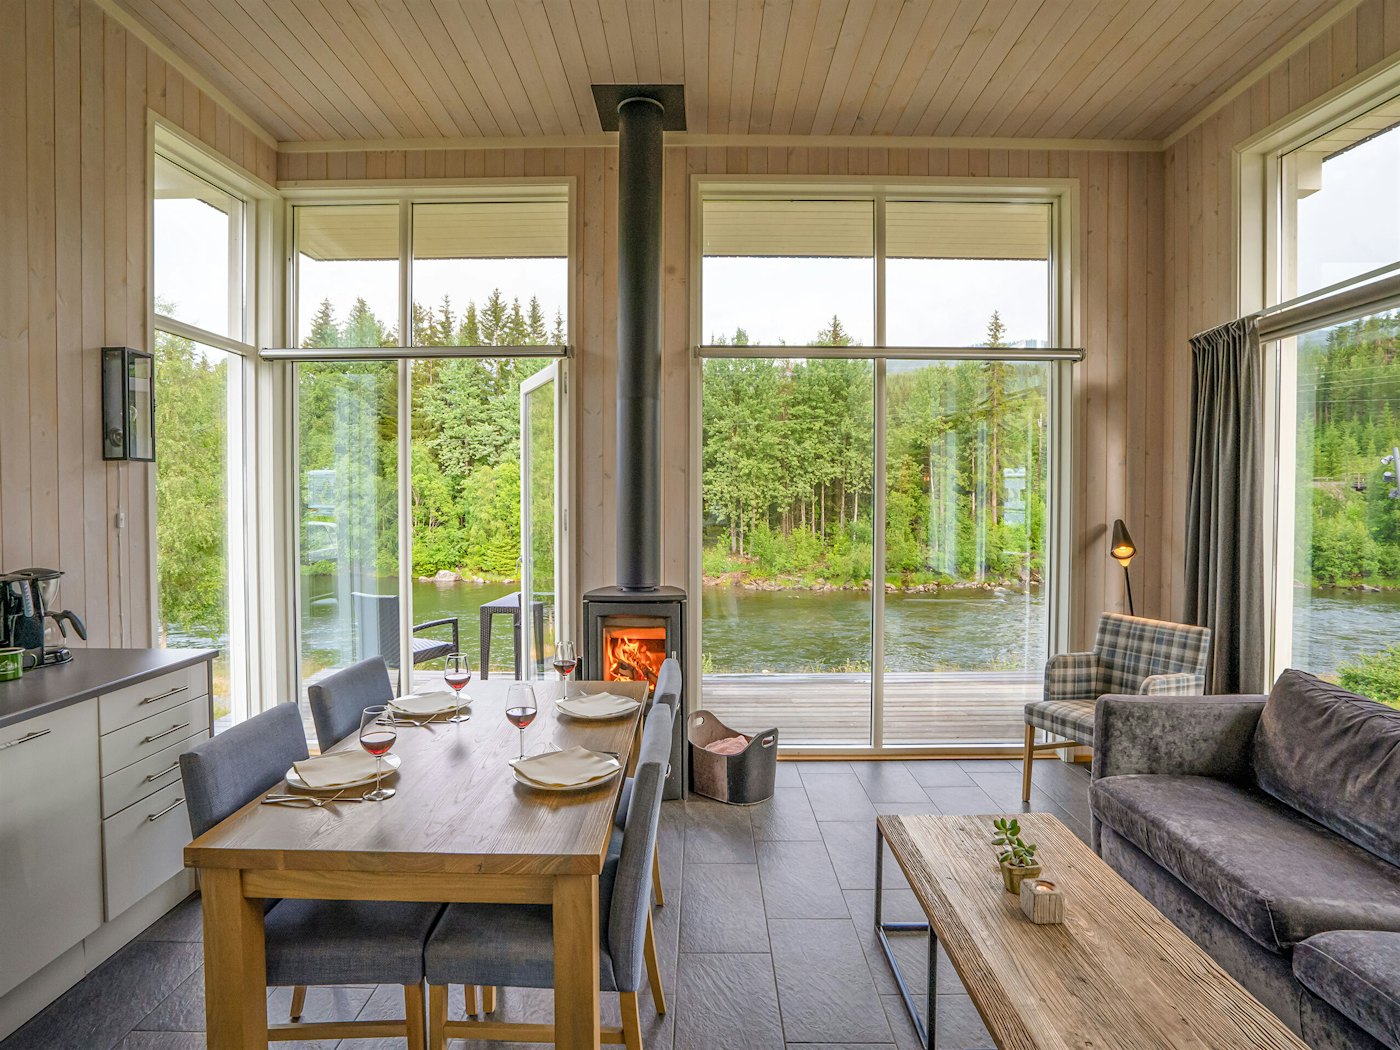 Lys stue med vinduer fra gulv til tak, spisebord sofa og peis. Utsikt over grønne trær og elv. Foto